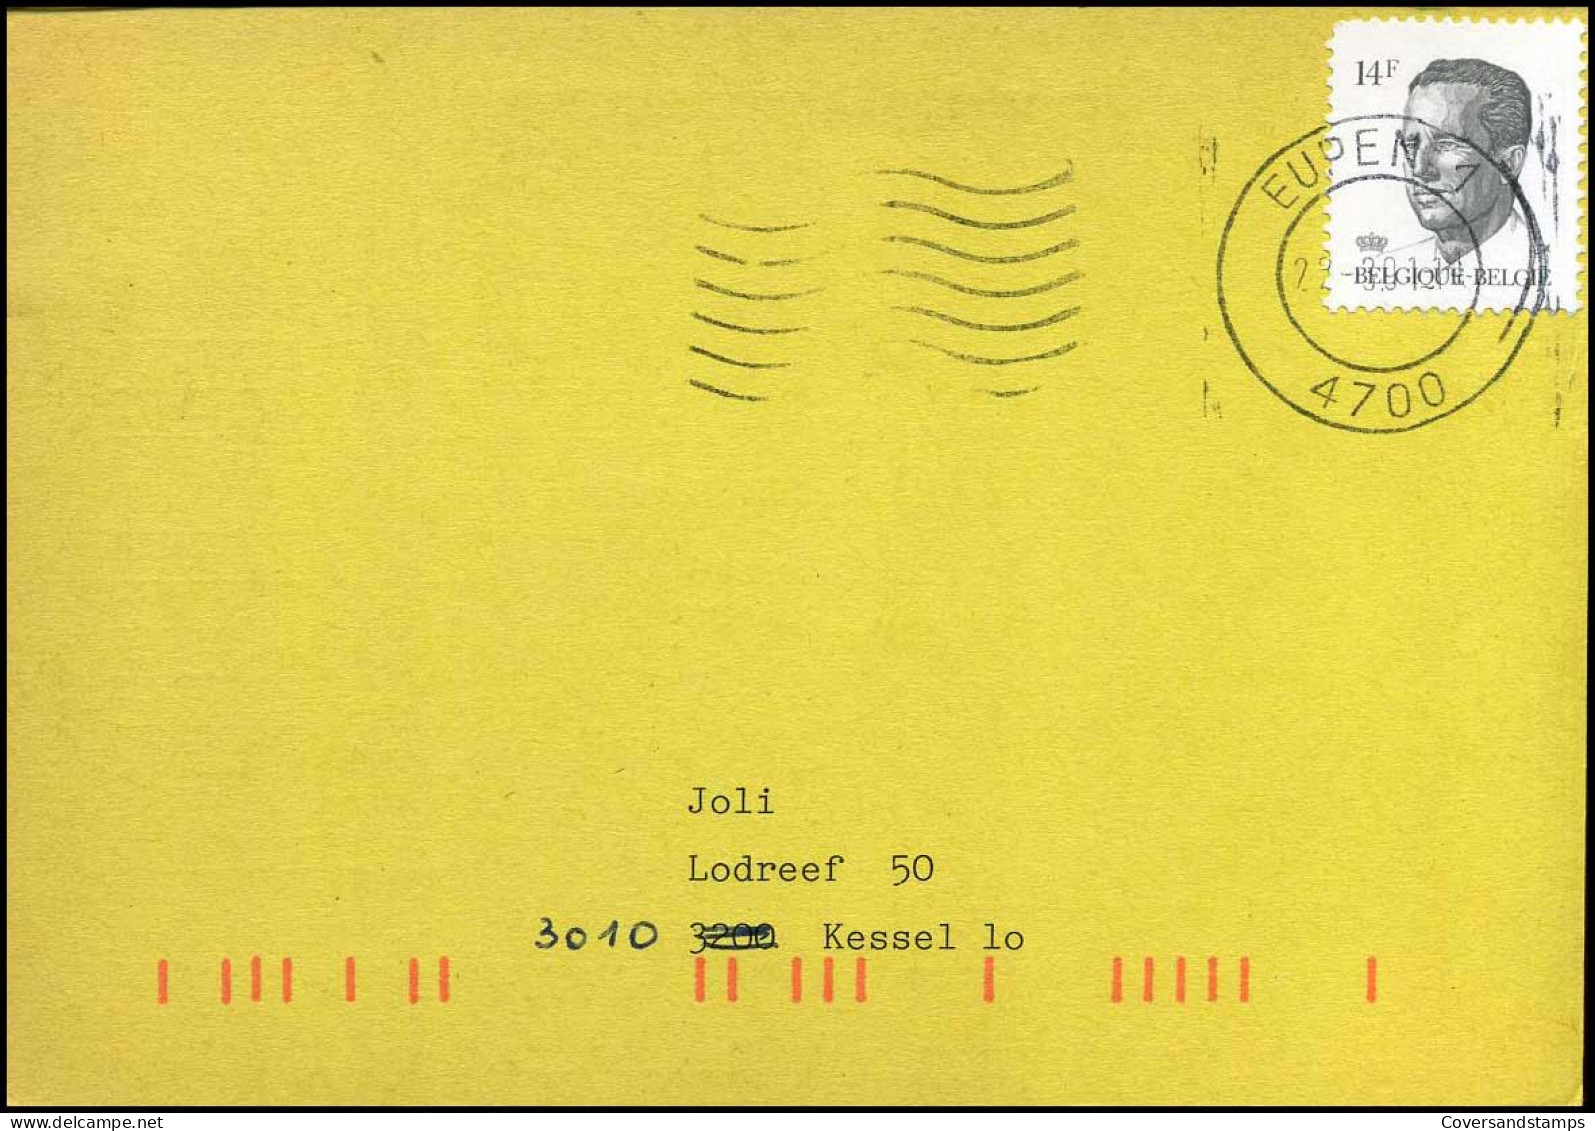 Postkaart : "Uitnamen - Prélêvements" Kring Nr 3008 - Briefe U. Dokumente